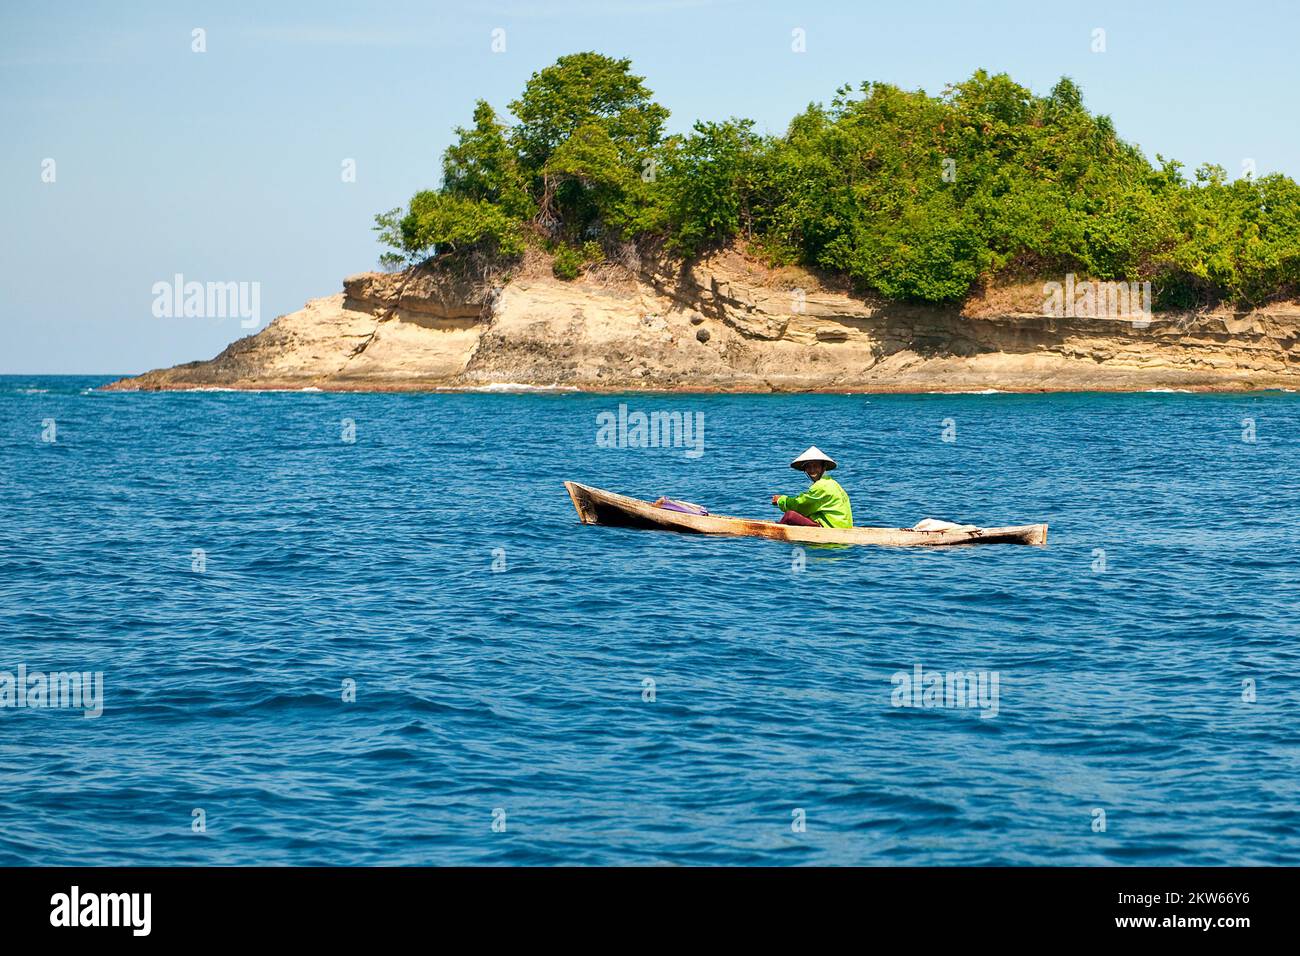 Pescatore in canoa canoe semplice barca sul mare ancora oceano Pacifico, sullo sfondo piccola isola, Isole Spezie, Molucche, Indonesia, Asia Foto Stock